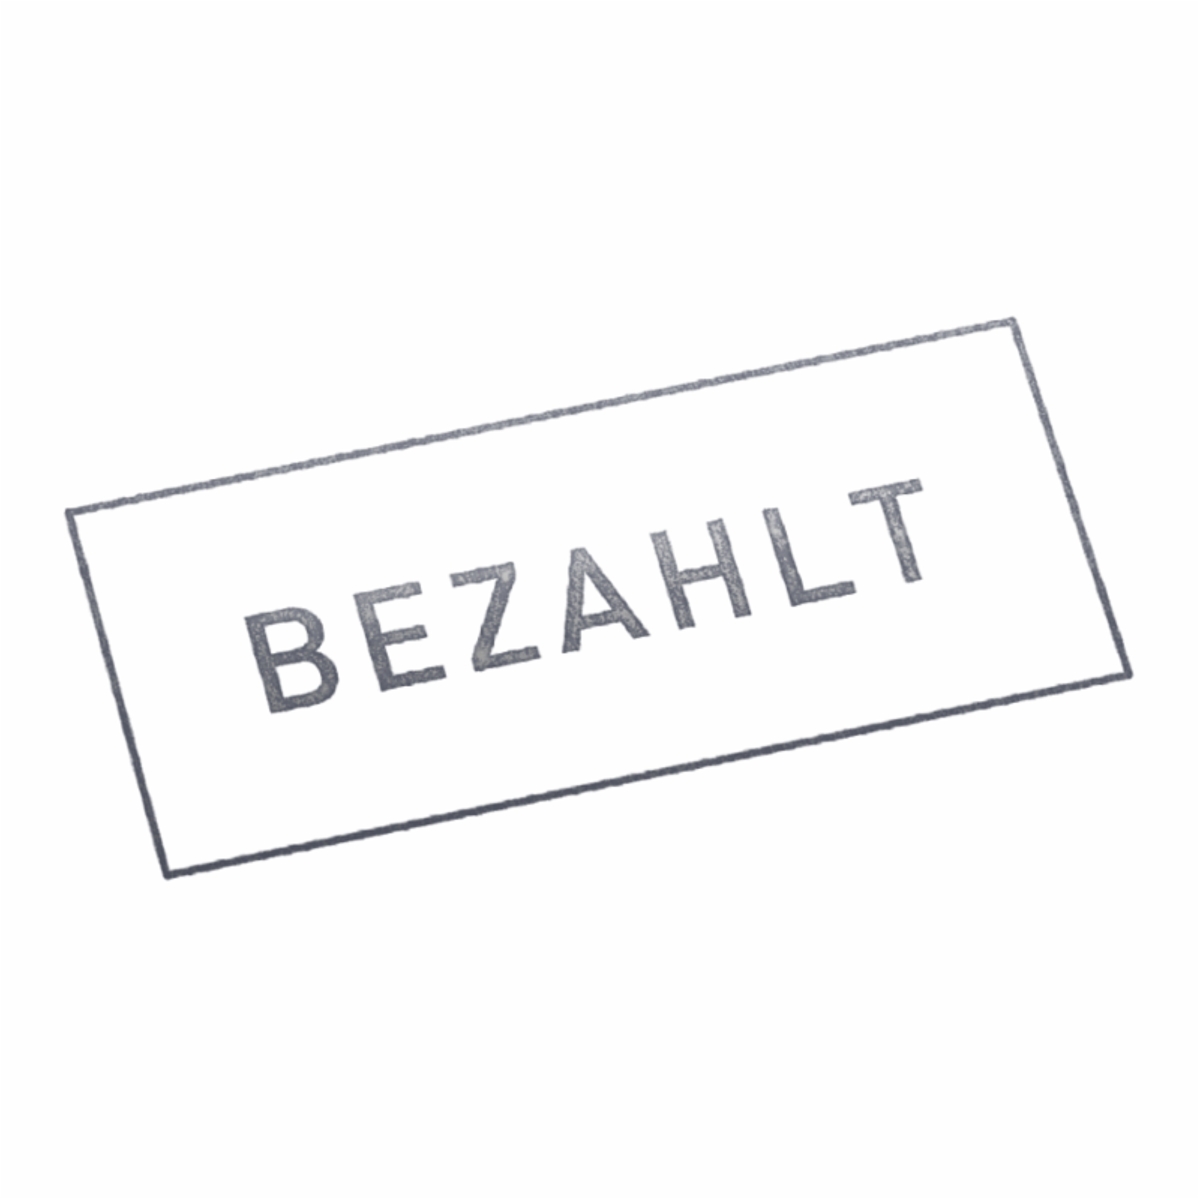 BEZAHLT | Stempel, selbstfärbend, Lagerstempel, 38 x 14 mm